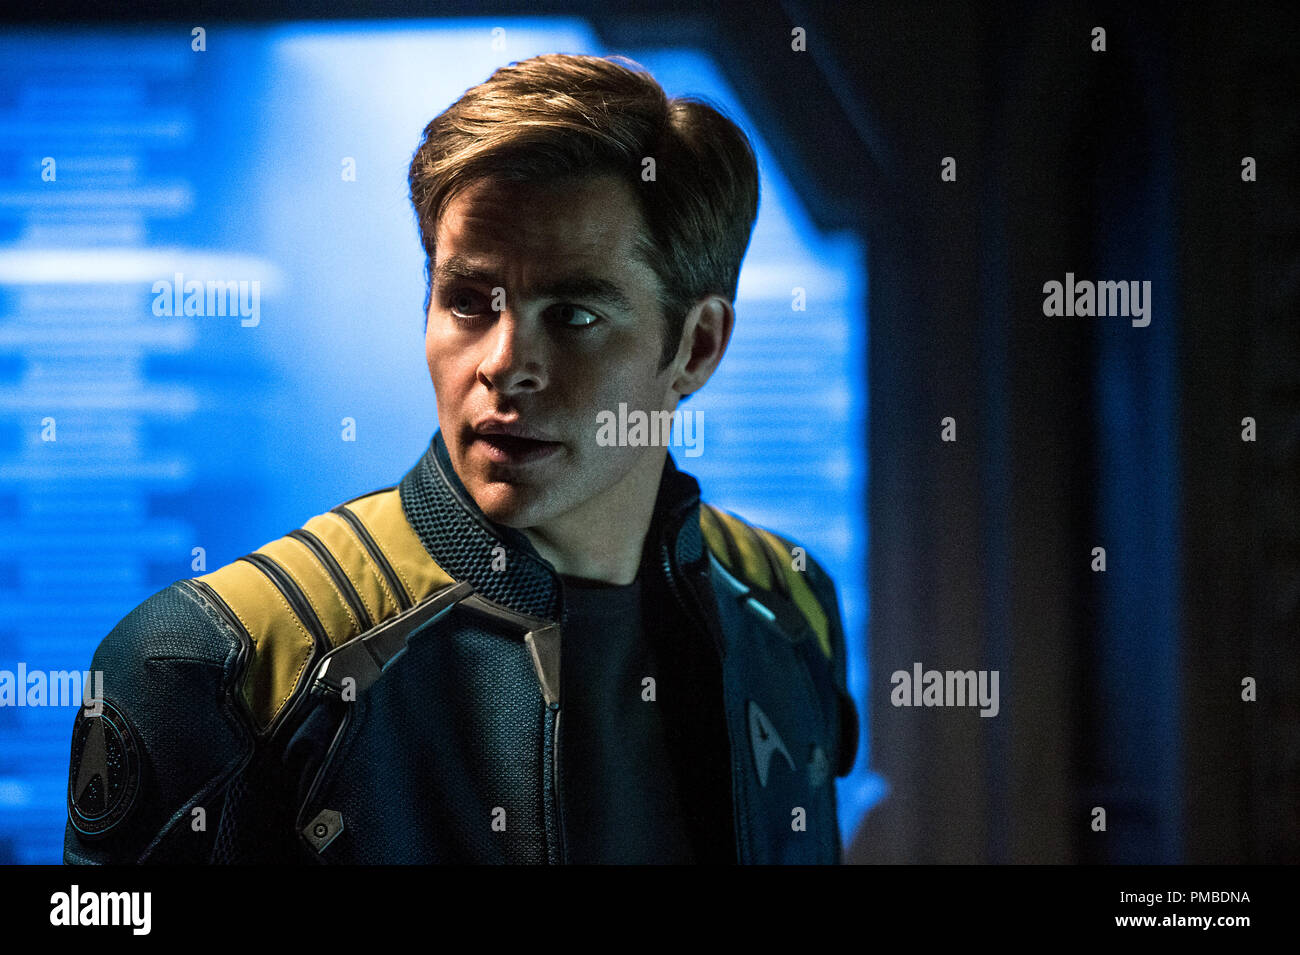 Chris Pine juega Kirk en Star Trek más allá de Paramount Pictures,  Skydance, Bad Robot, astuta y tiburón Tormenta Perfecta Entertainment  Fotografía de stock - Alamy